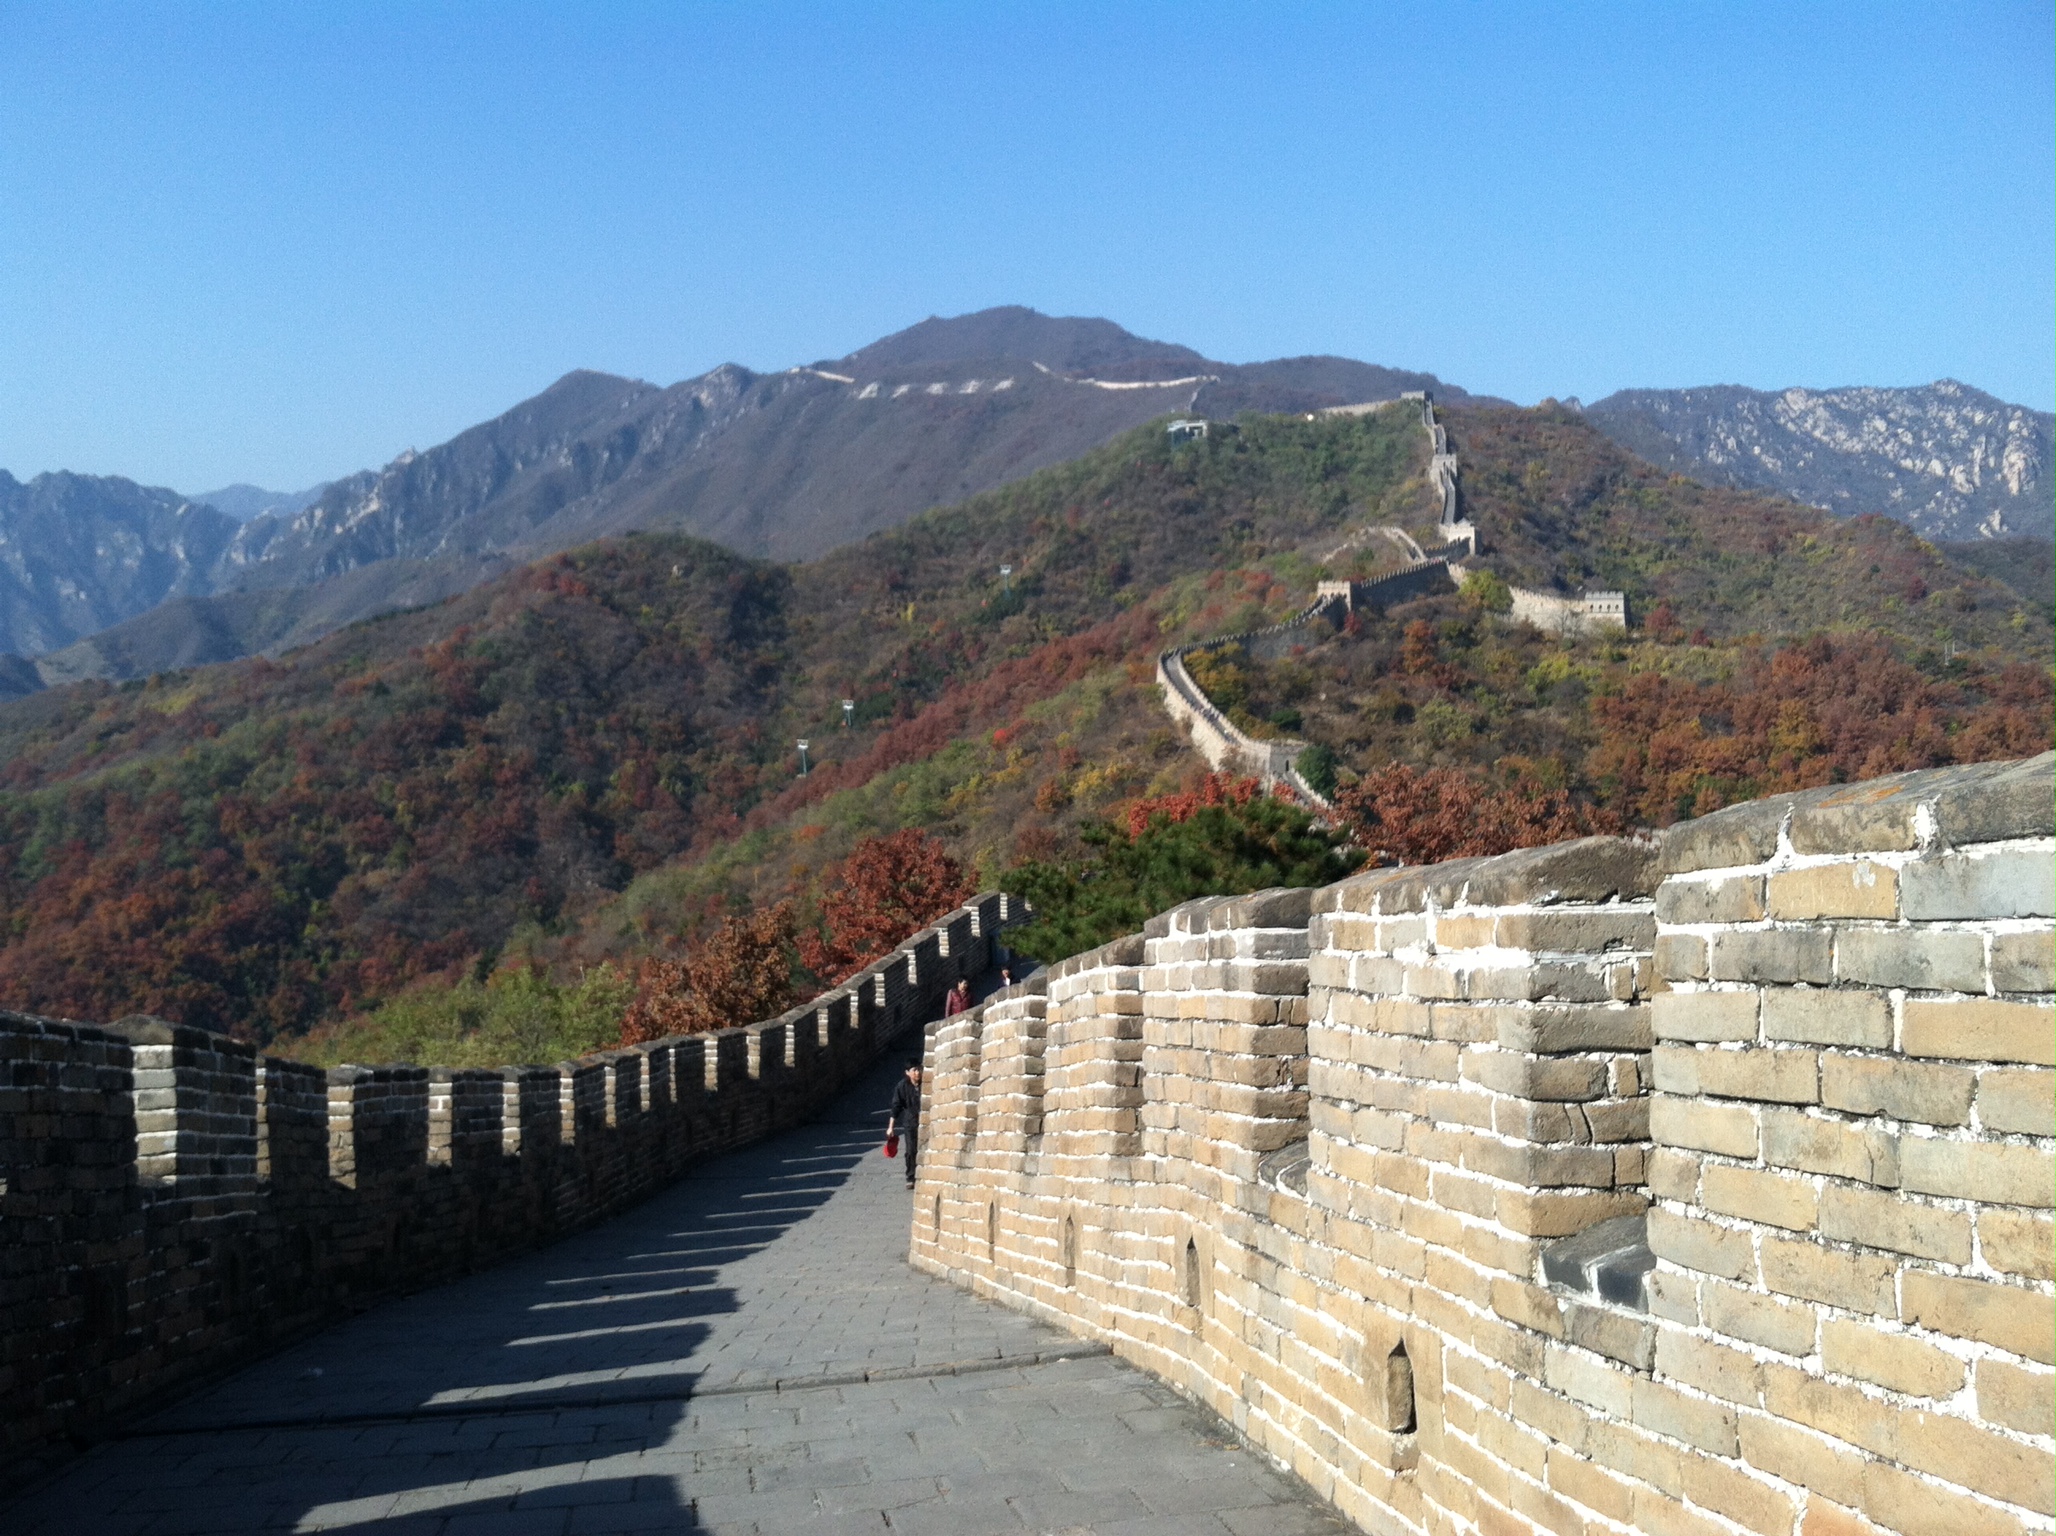 The Great Wall of China – Mutianyu